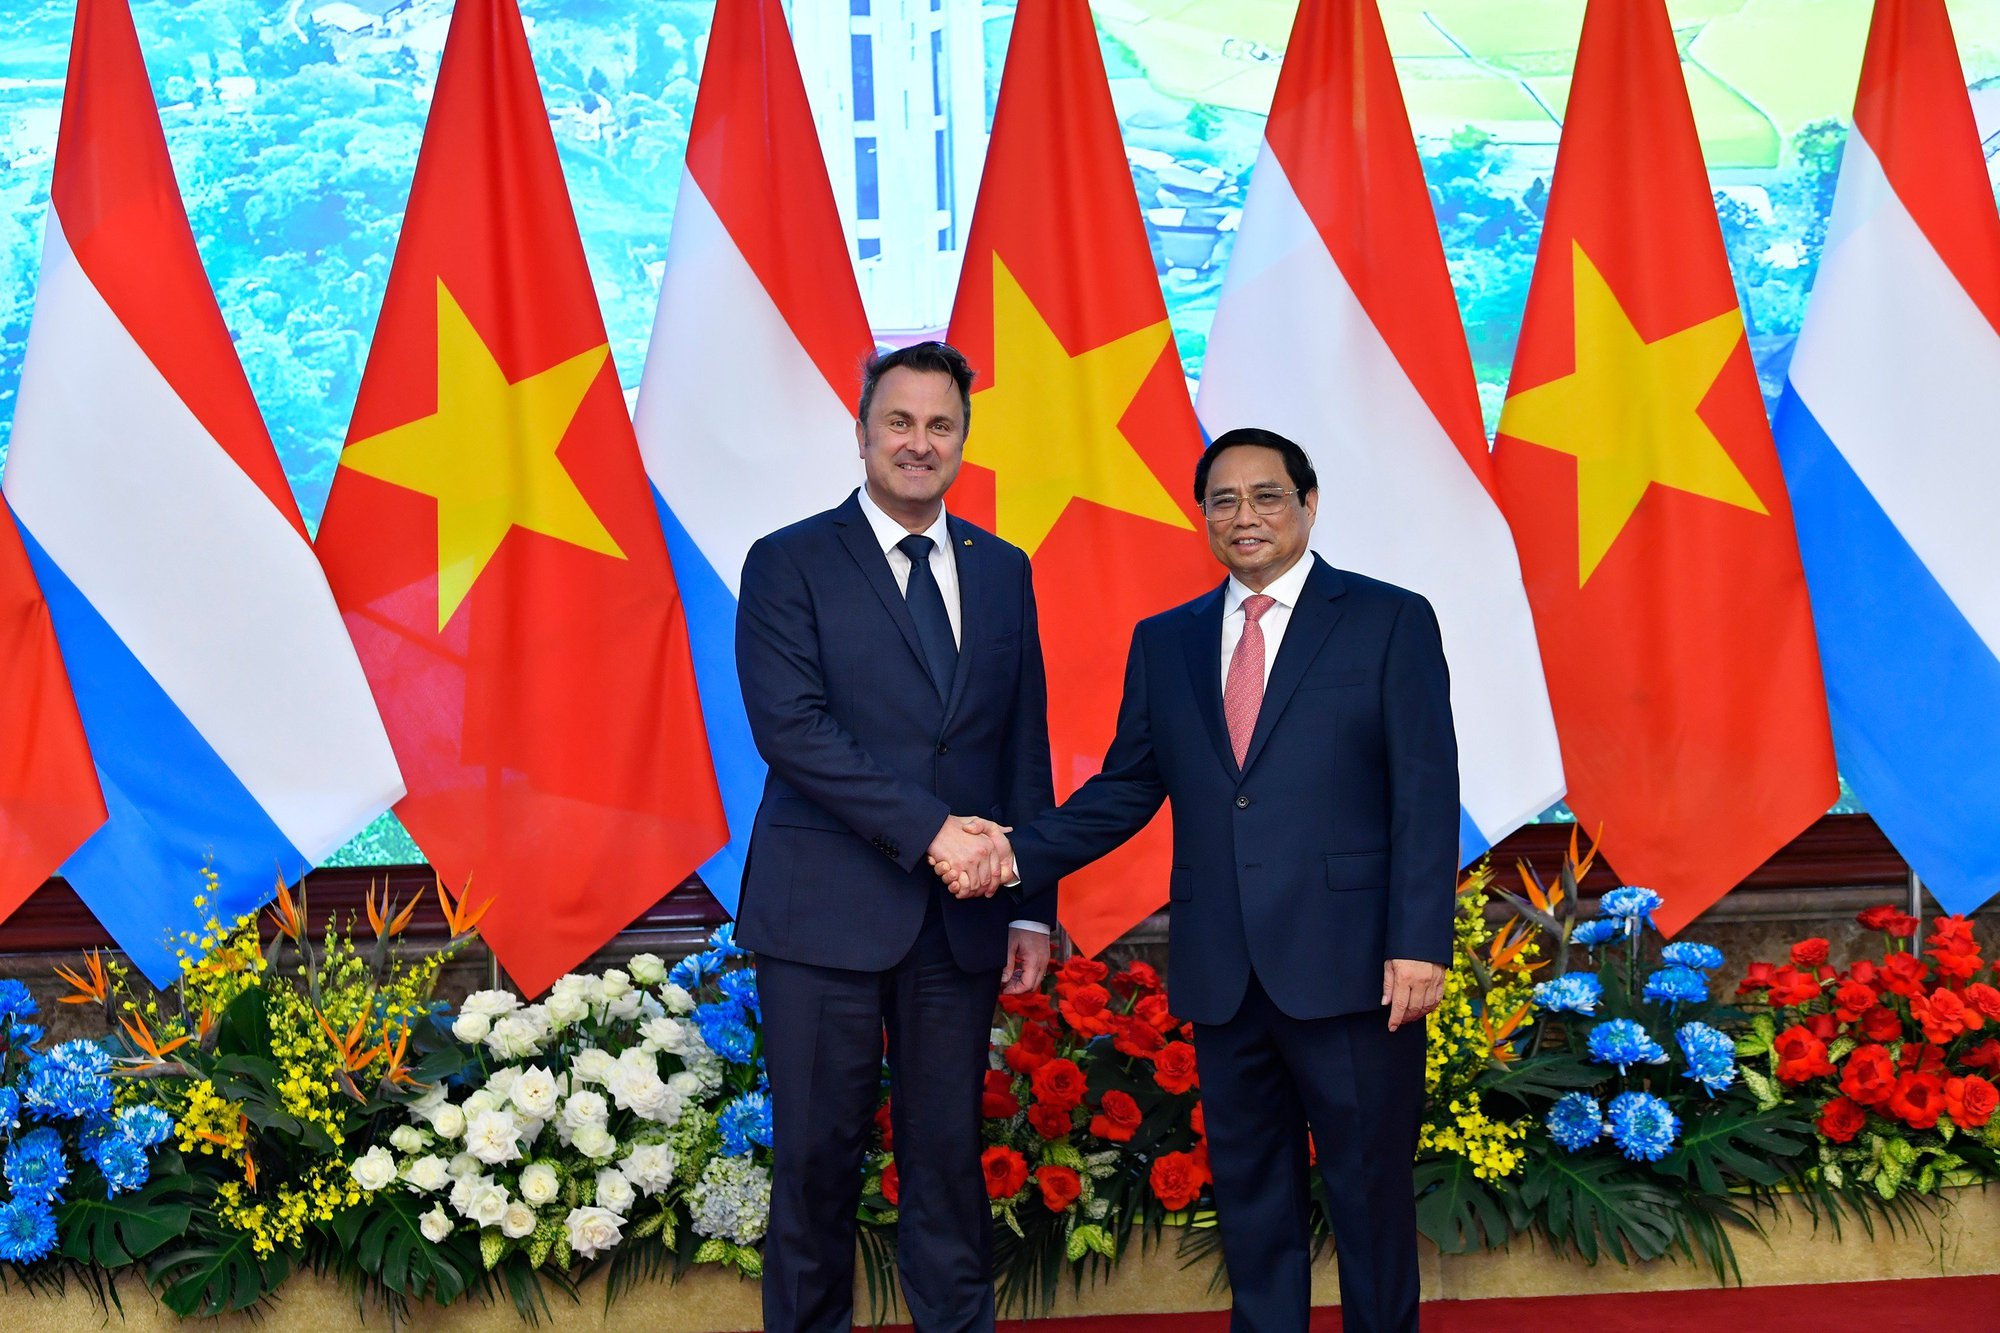 Chùm ảnh: Thủ tướng Phạm Minh Chính đón, hội đàm với Thủ tướng Luxembourg - Ảnh 8.